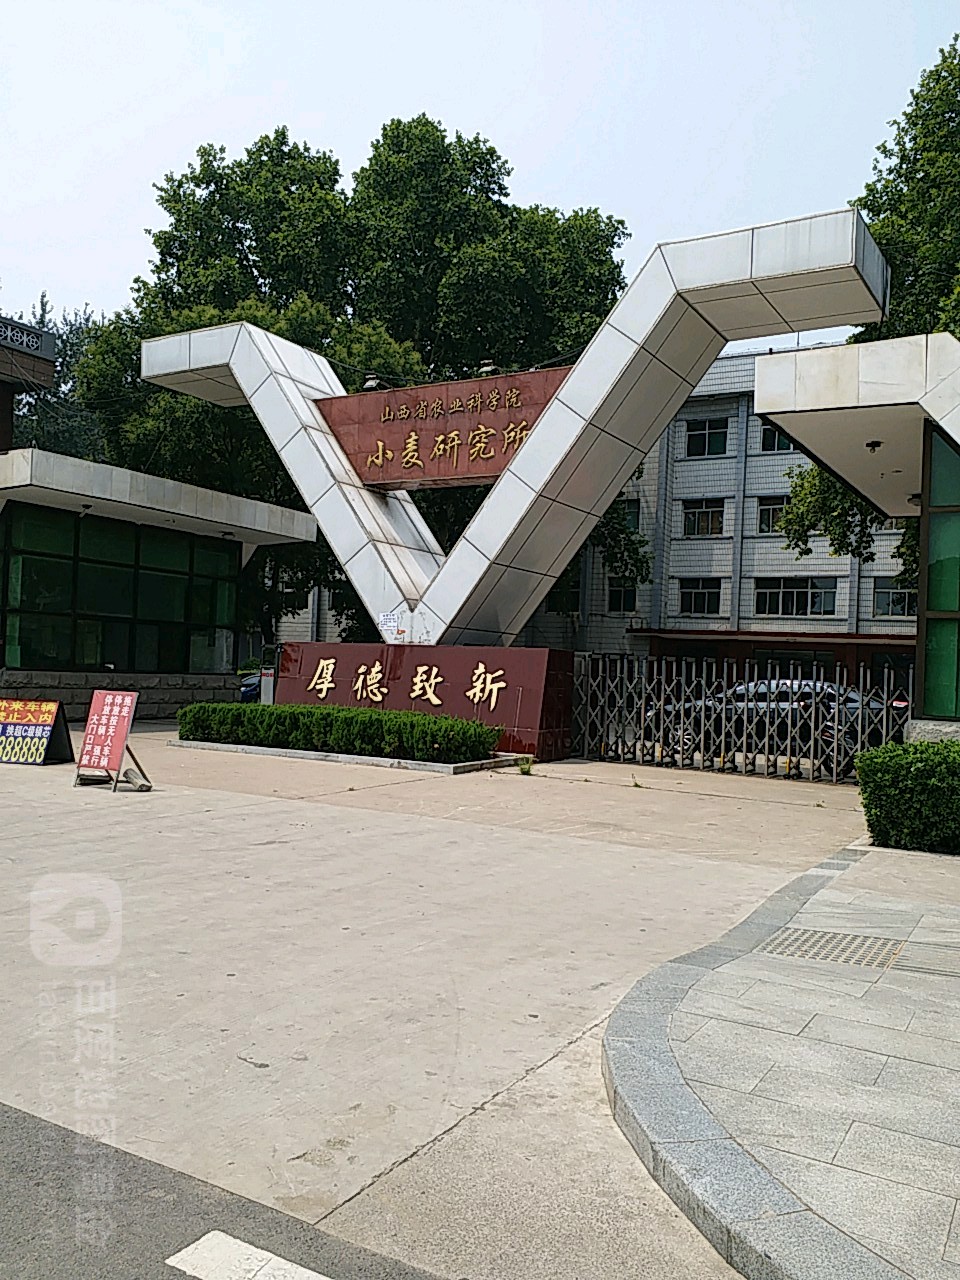 山西农业大学(山西省农业科学院)小麦研究所